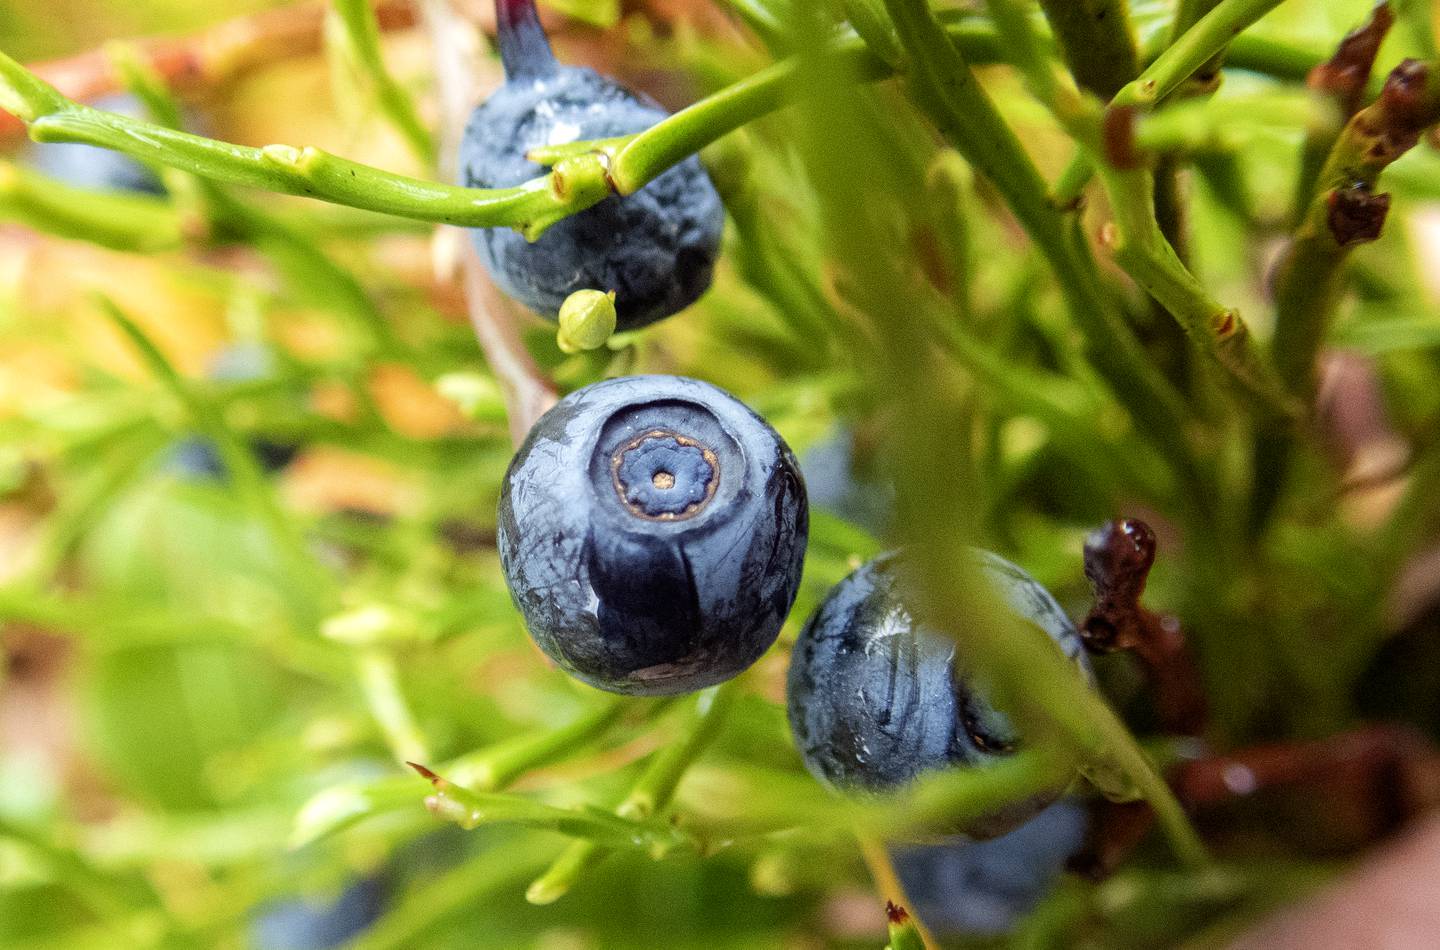 Blåbær er den ville matplanten det sankes mest av i Norge, ifølge en spørreundersøkelse som ble gjennomført i 2020.